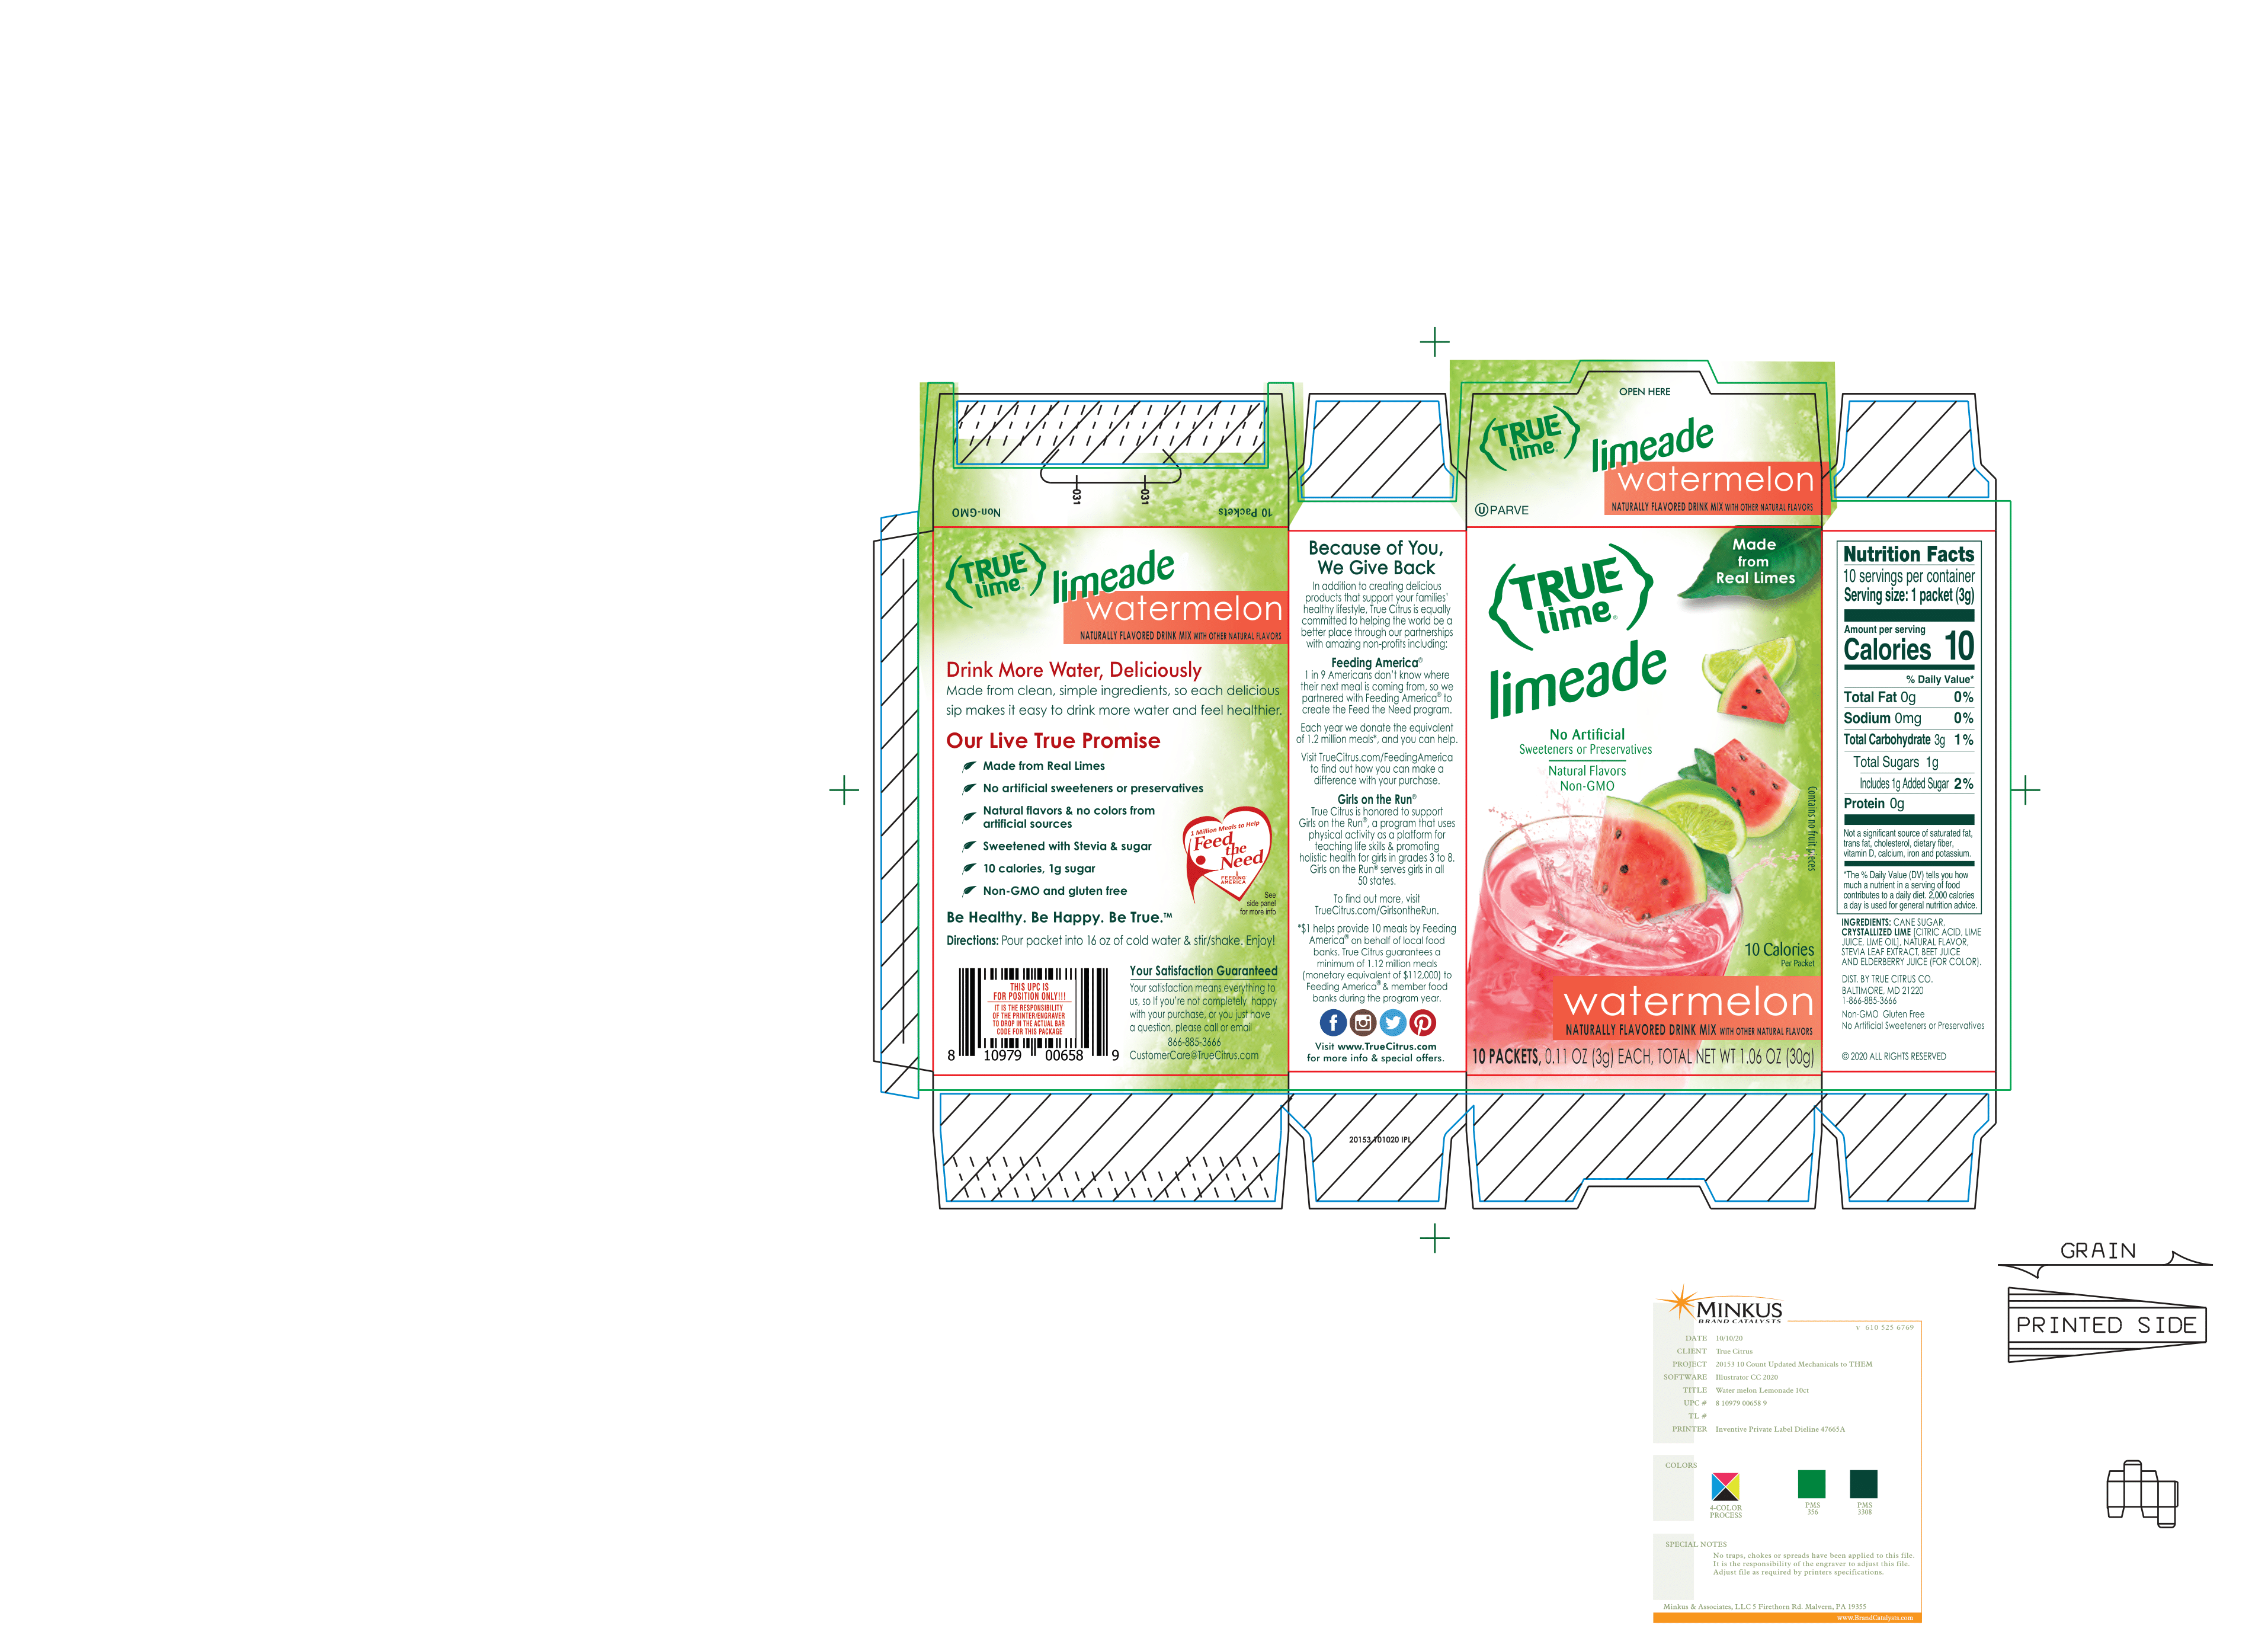 True Lime Limeade Watermelon 12 units per case 1.1 oz Product Label